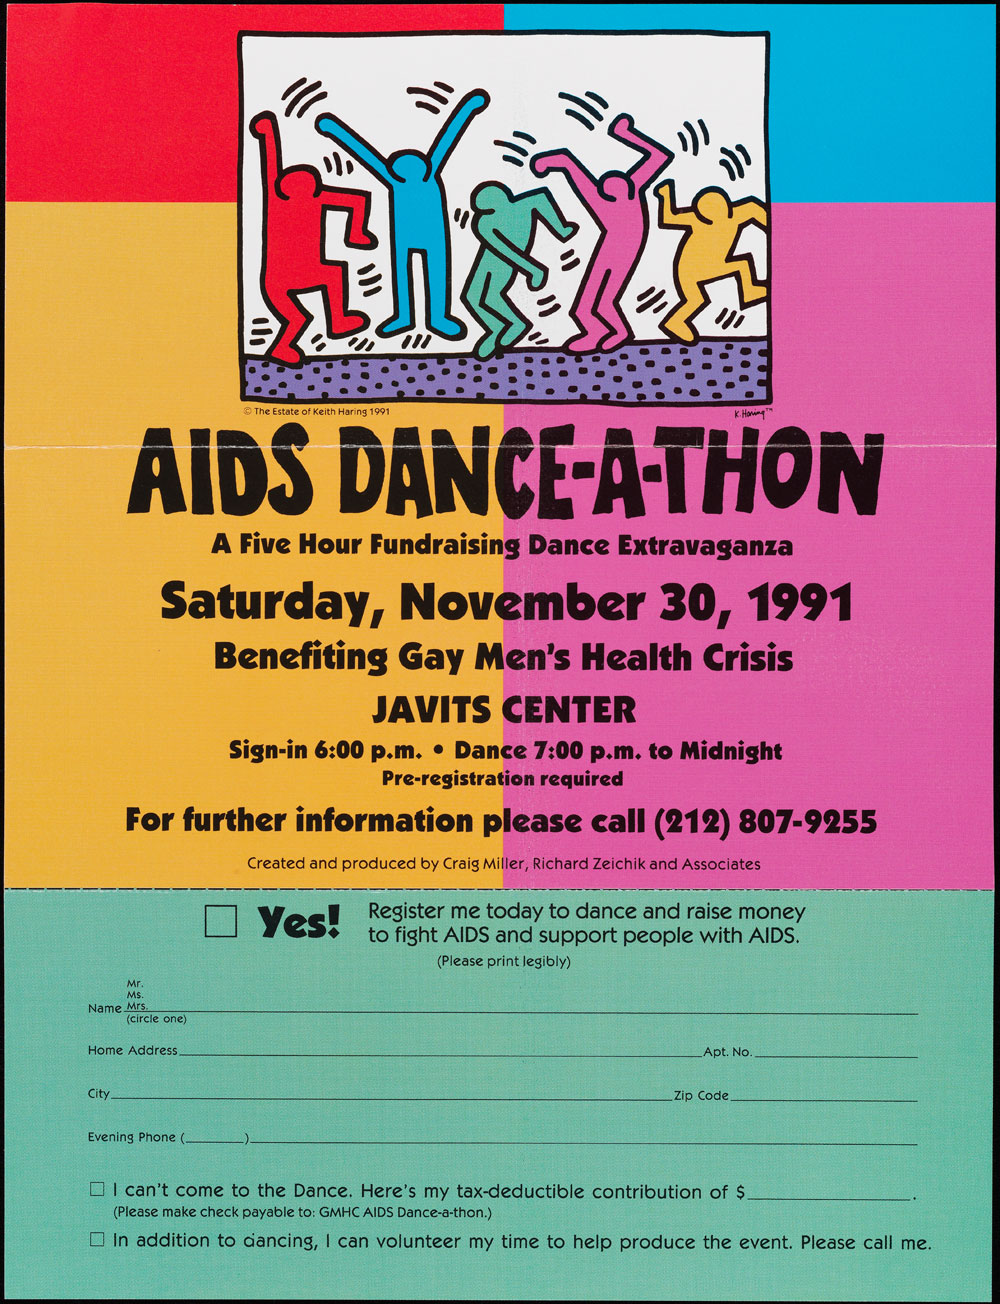 1991年XNUMX月に「エイズダンスアトーン」を宣伝するチラシ。ポスターは鮮やかな色で、登録フォームが含まれています。